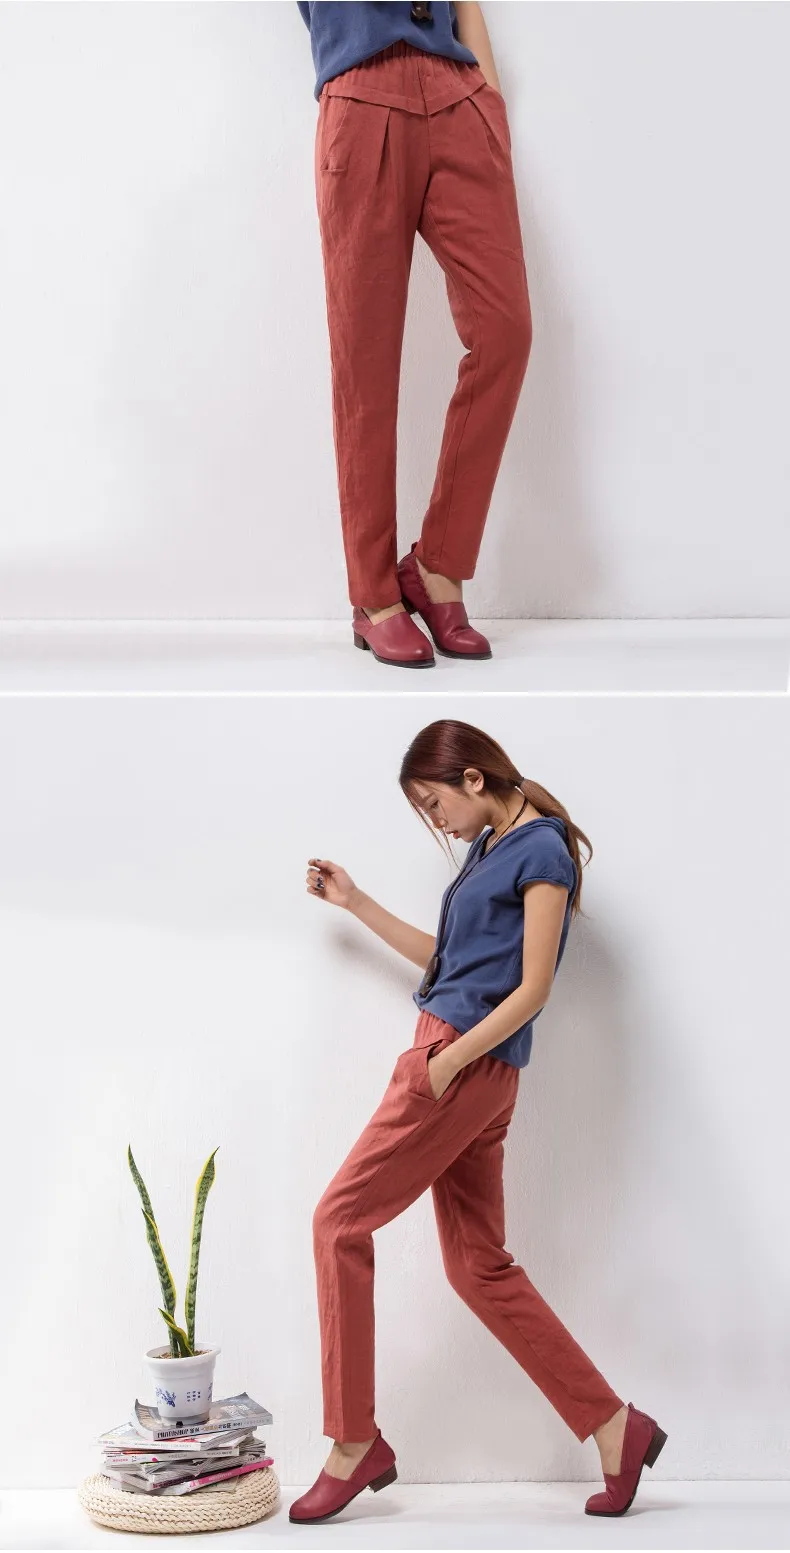 YuooMuoo новые модные женские брюки с эластичной резинкой на талии, узкие льняные брюки-карандаш, летние брюки для женщин, повседневная женская одежда